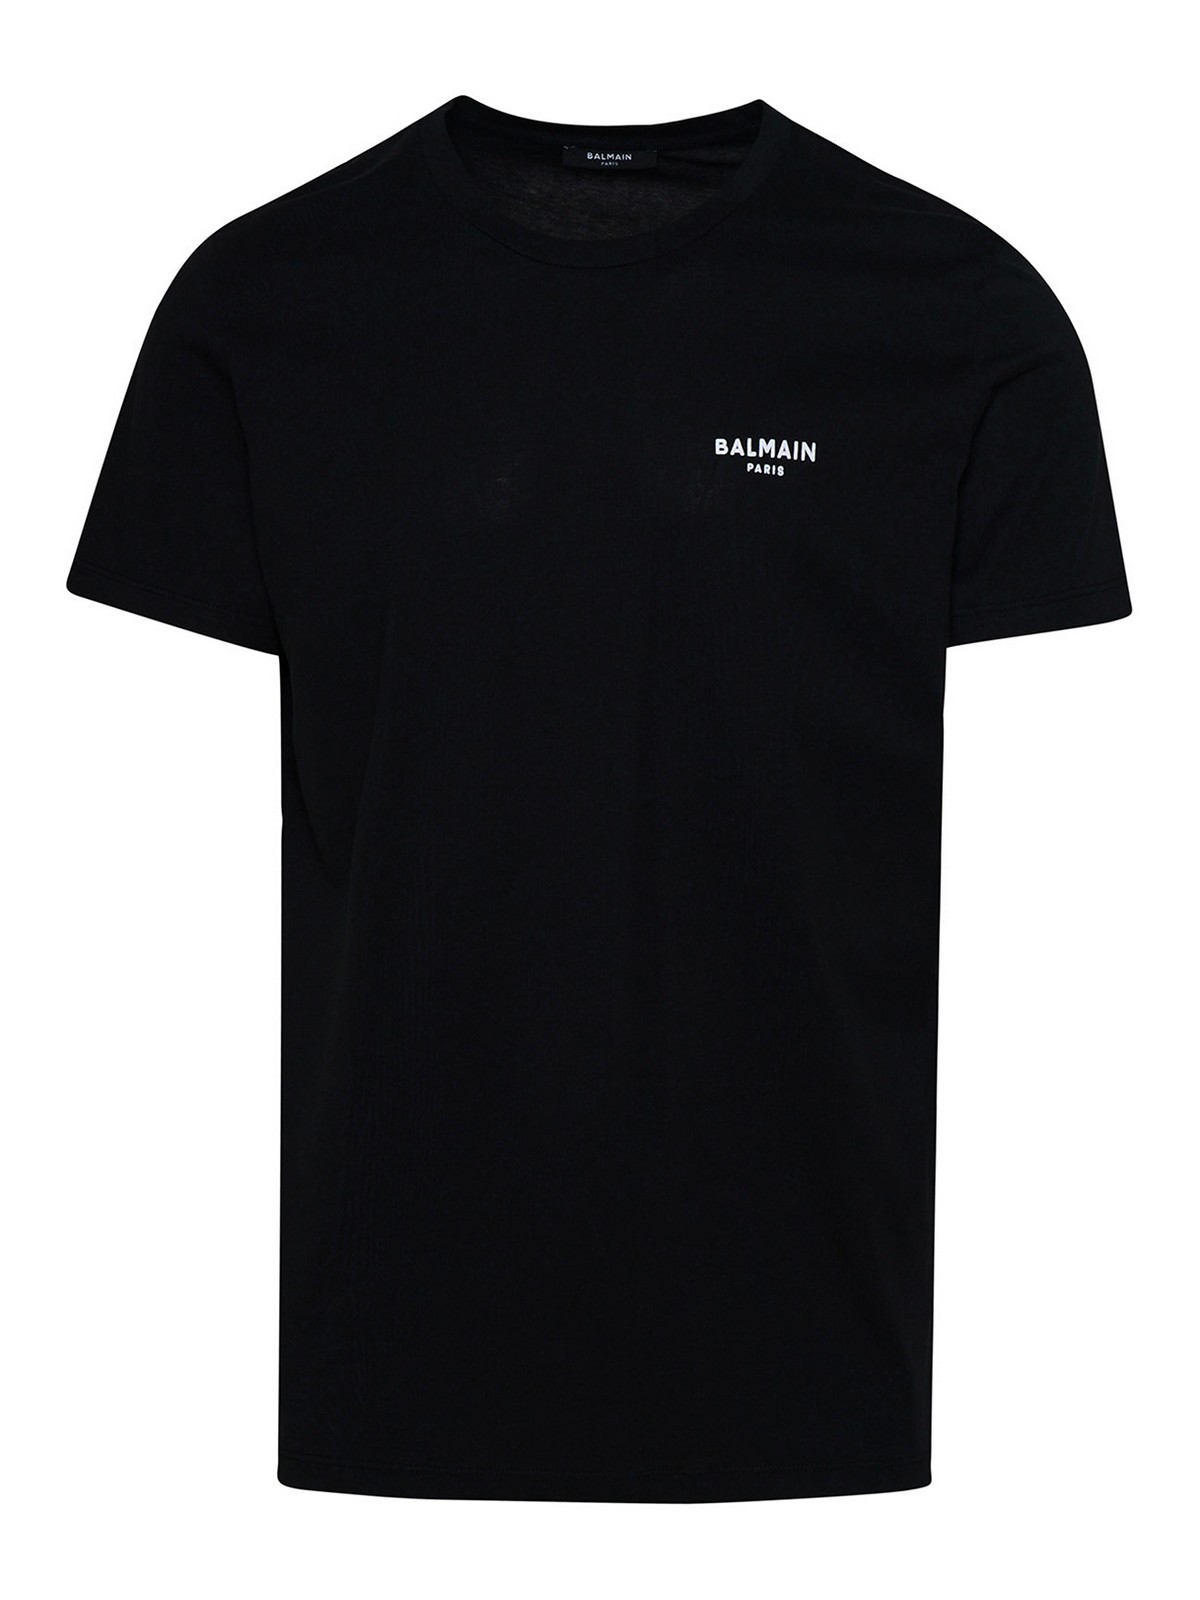 Balmain Camiseta - Negro